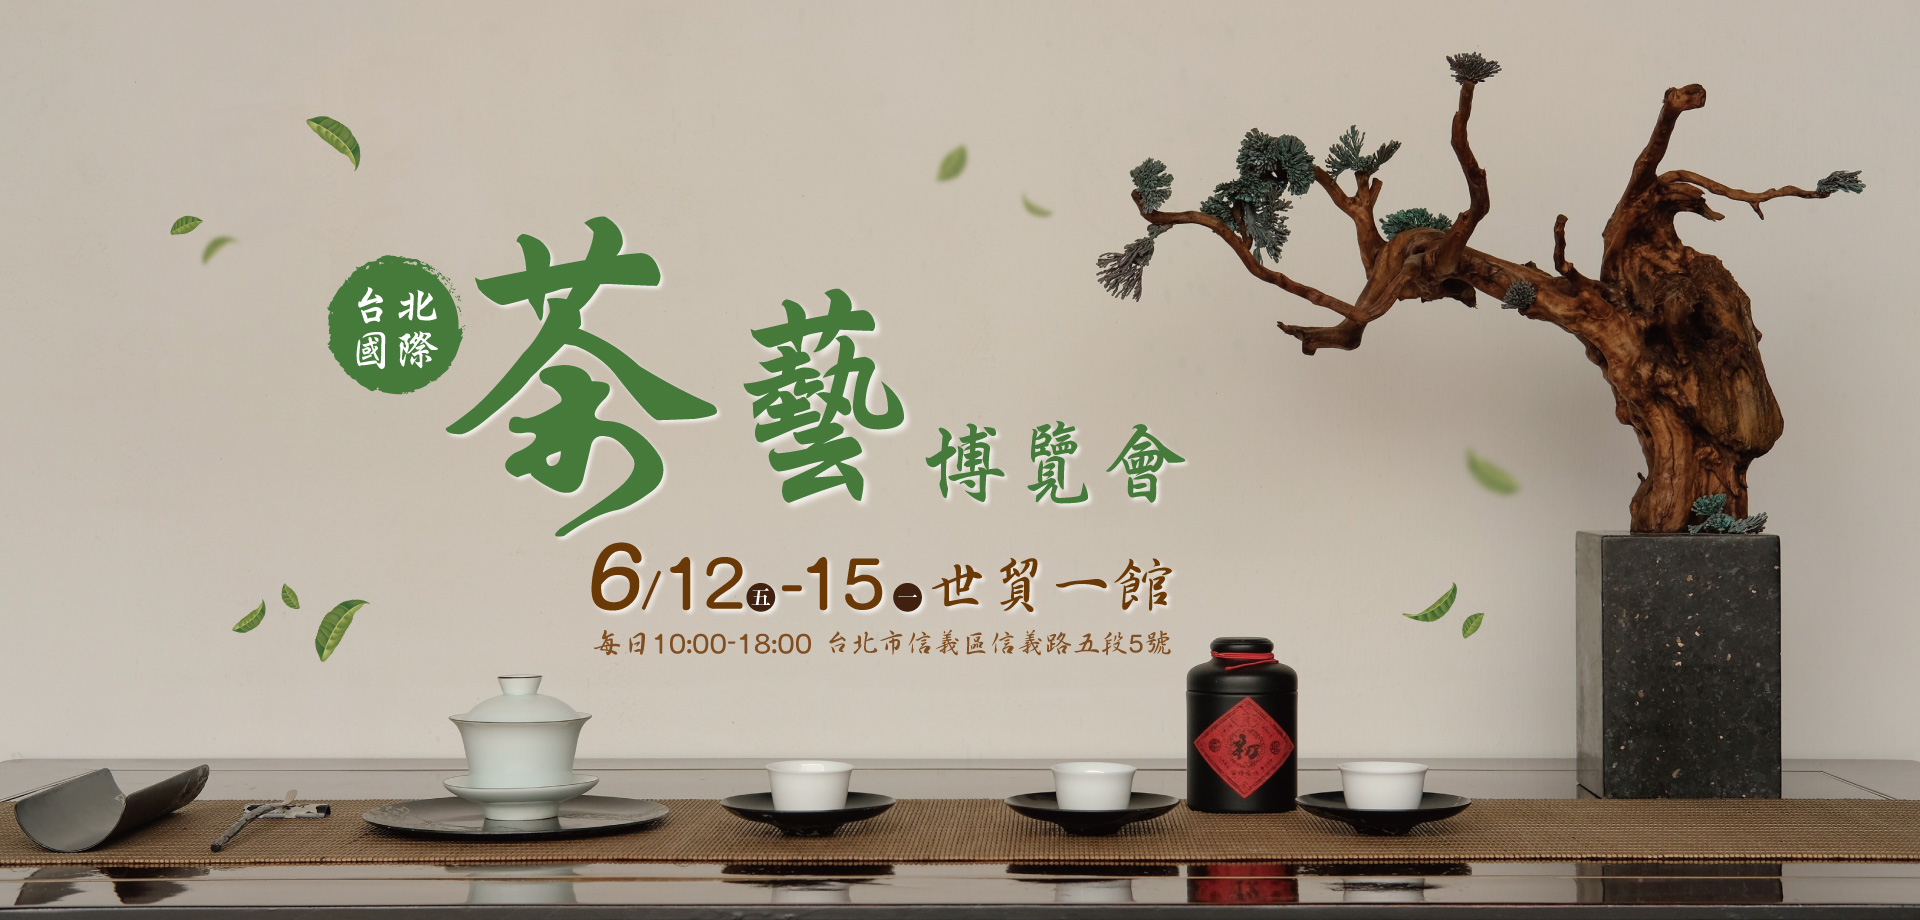 2020 6/12-6/15 台北茶展